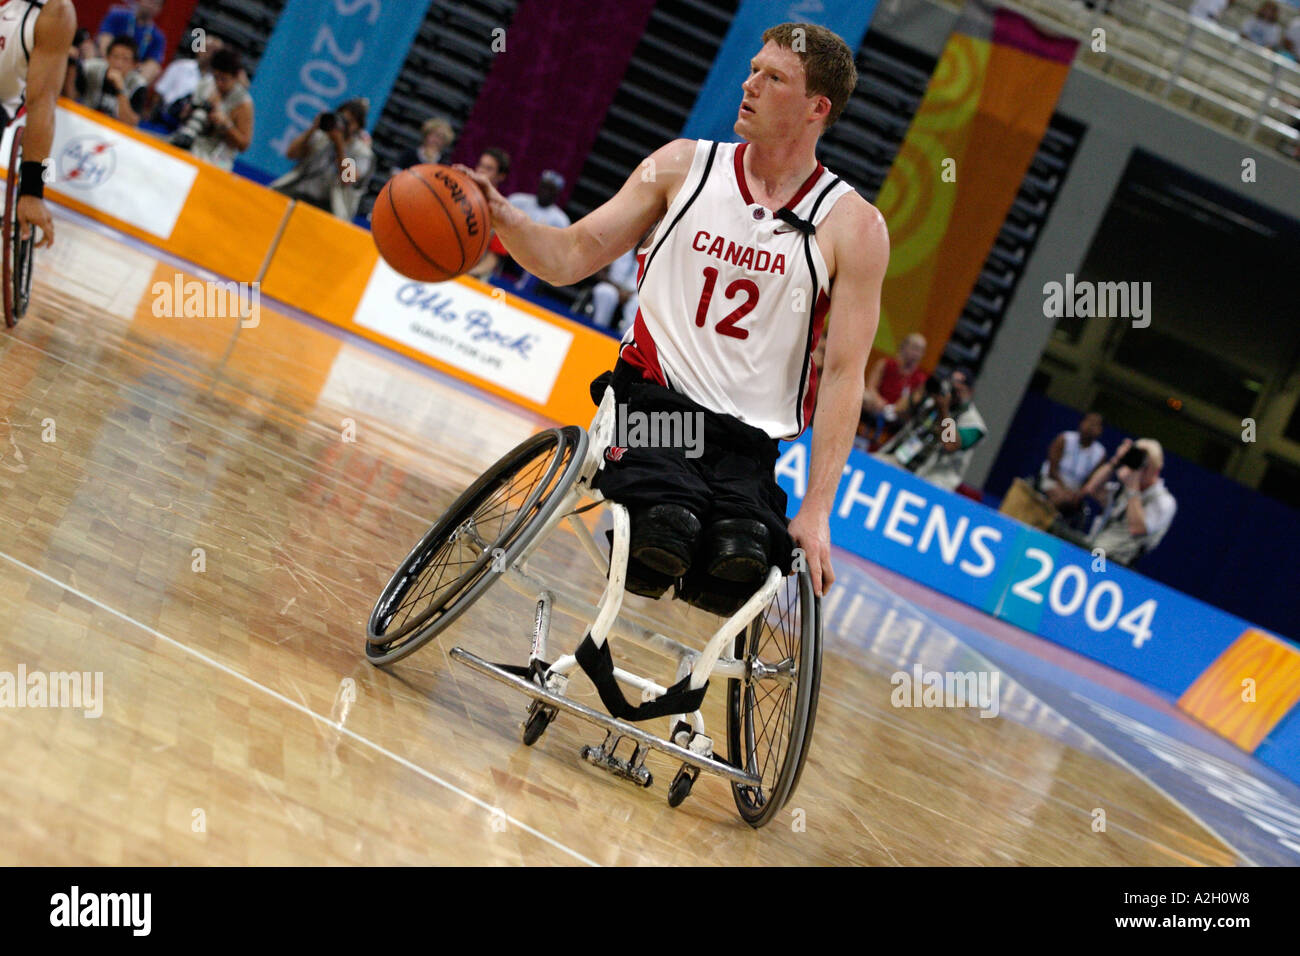 Patrick Anderson le capitaine des Canadiens dans le dernier match de basket-ball médaille d'or entre le Canada et l'Australie 2004 Athènes Paralym Banque D'Images